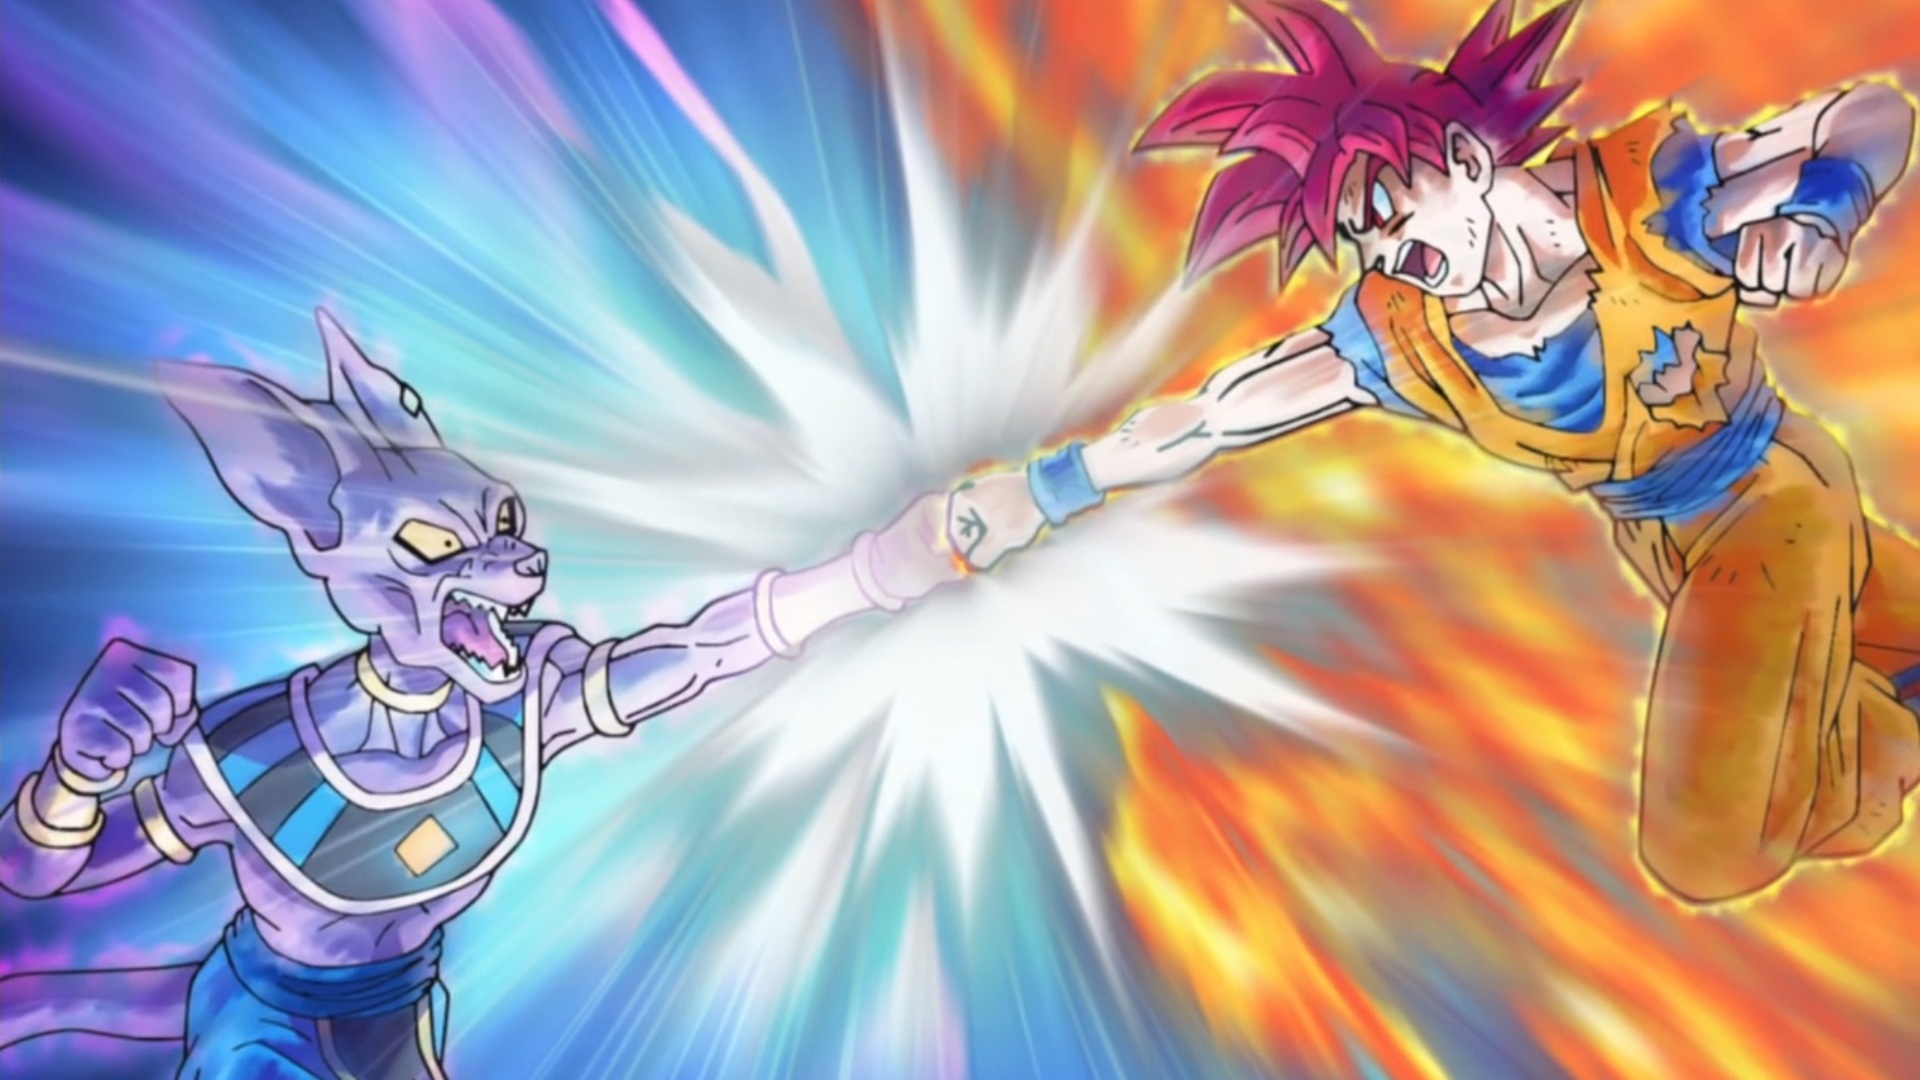 Goku vs Beerus #goku #beerus #anime #animeedit #saiyan #animetiktok #d... |  TikTok